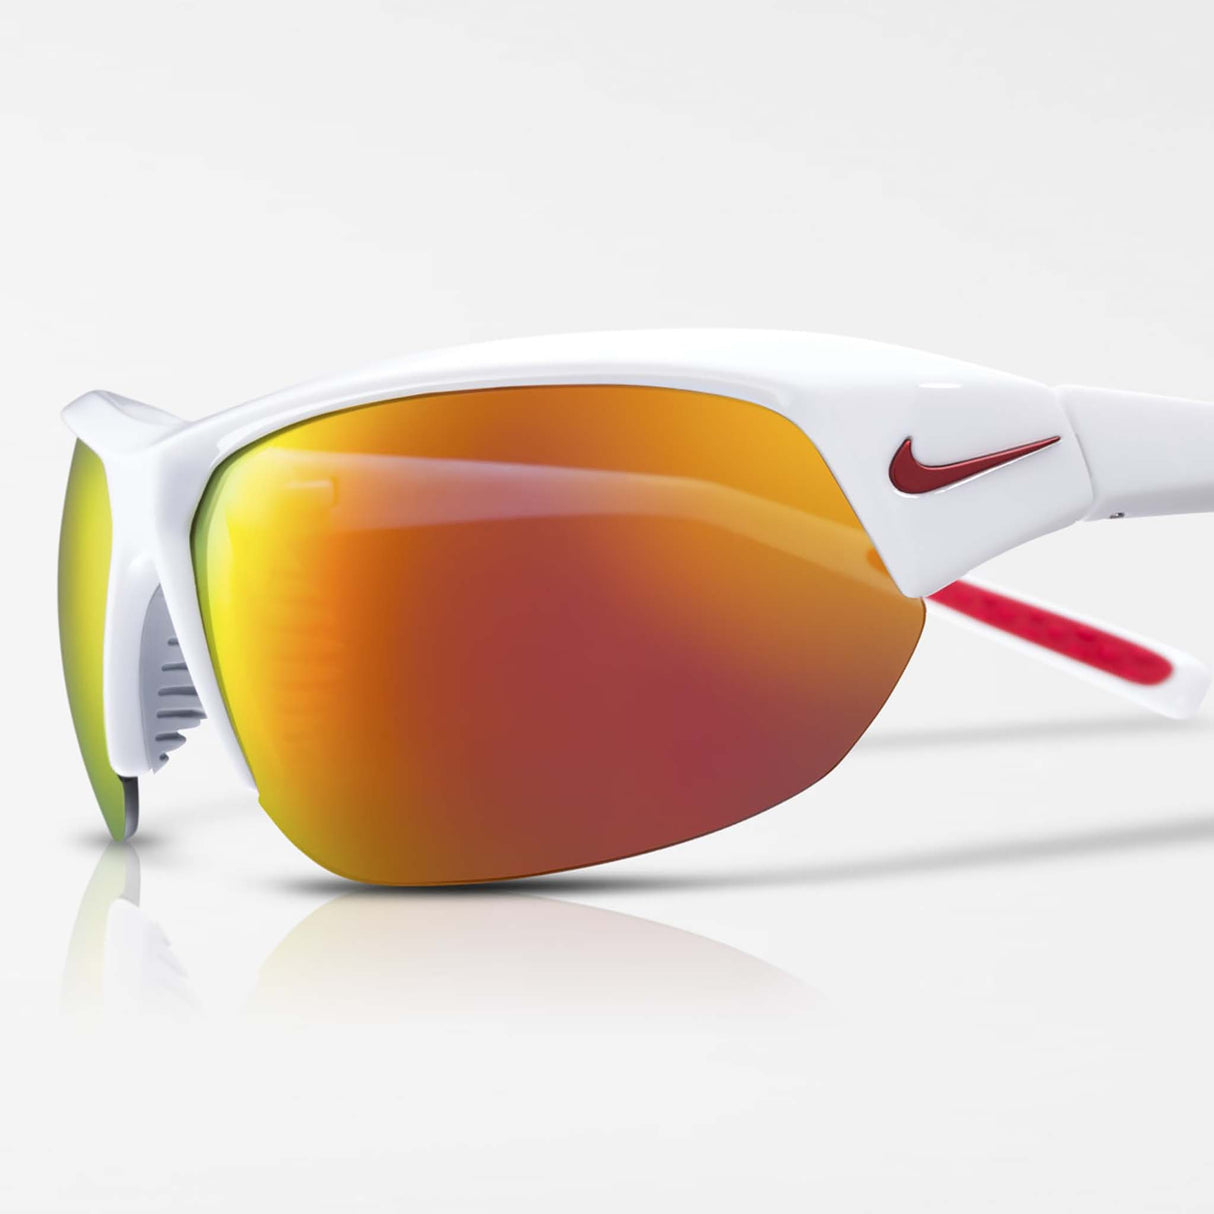 Nike Skylon Ace lunettes de soleil sport blanc gris rouge miroir verre